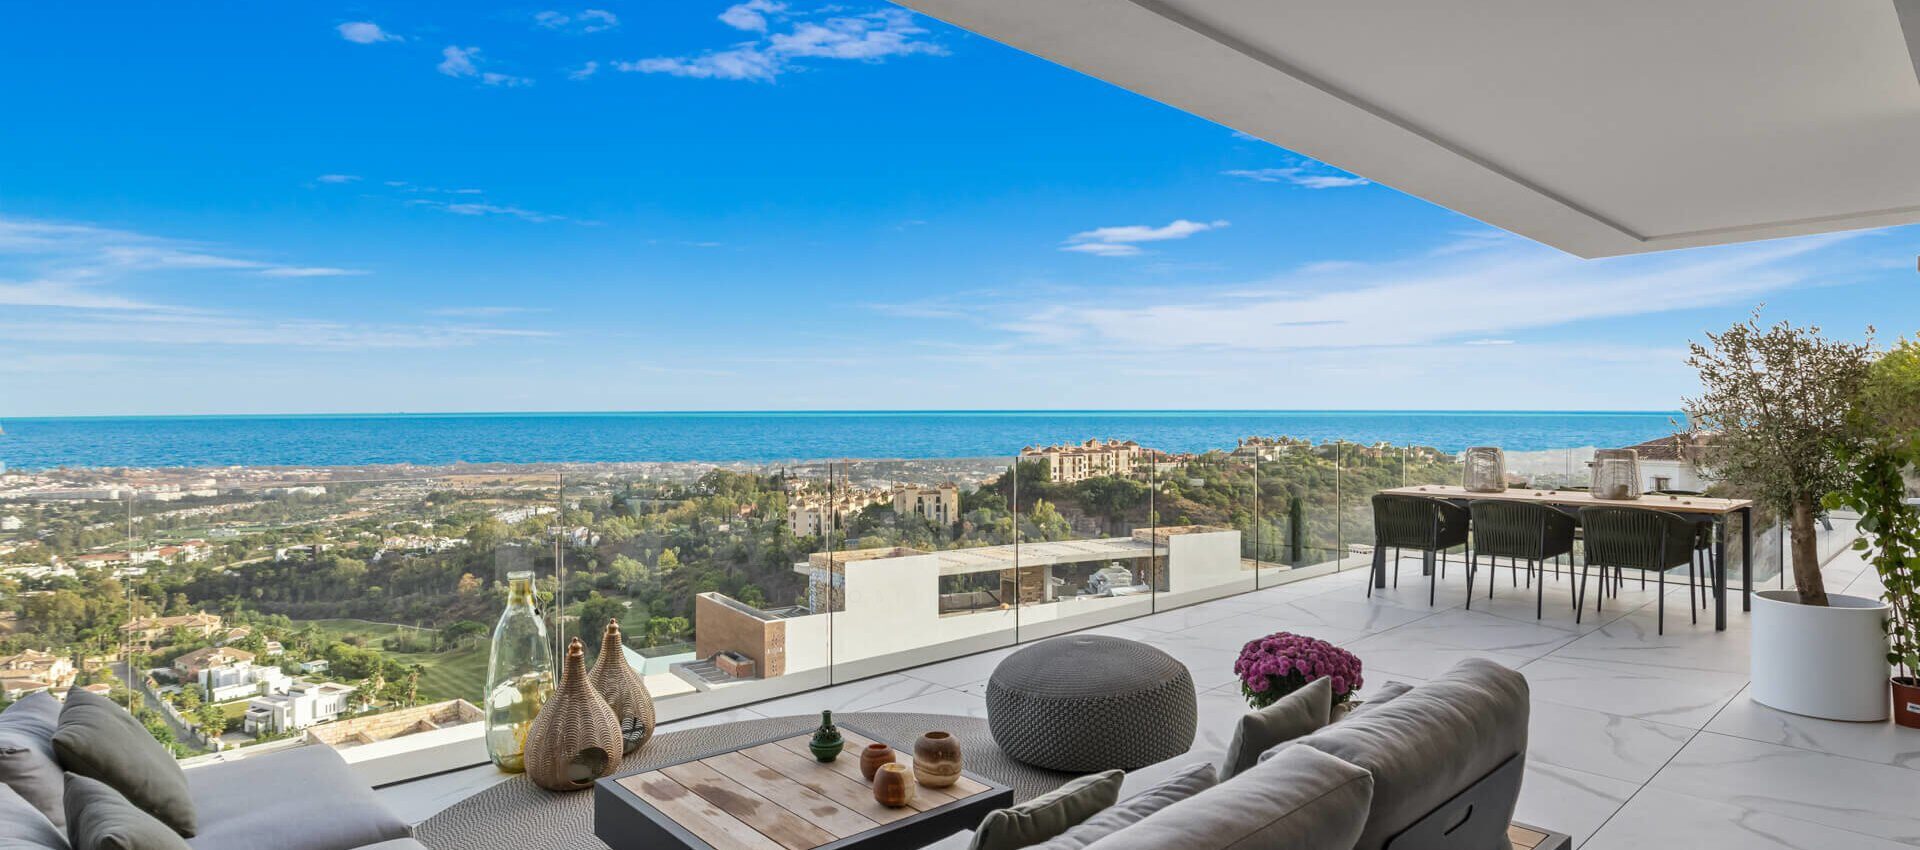 Luxus Apartment mit höchsten Qualitätsstandards und Panoramablick auf das Meer